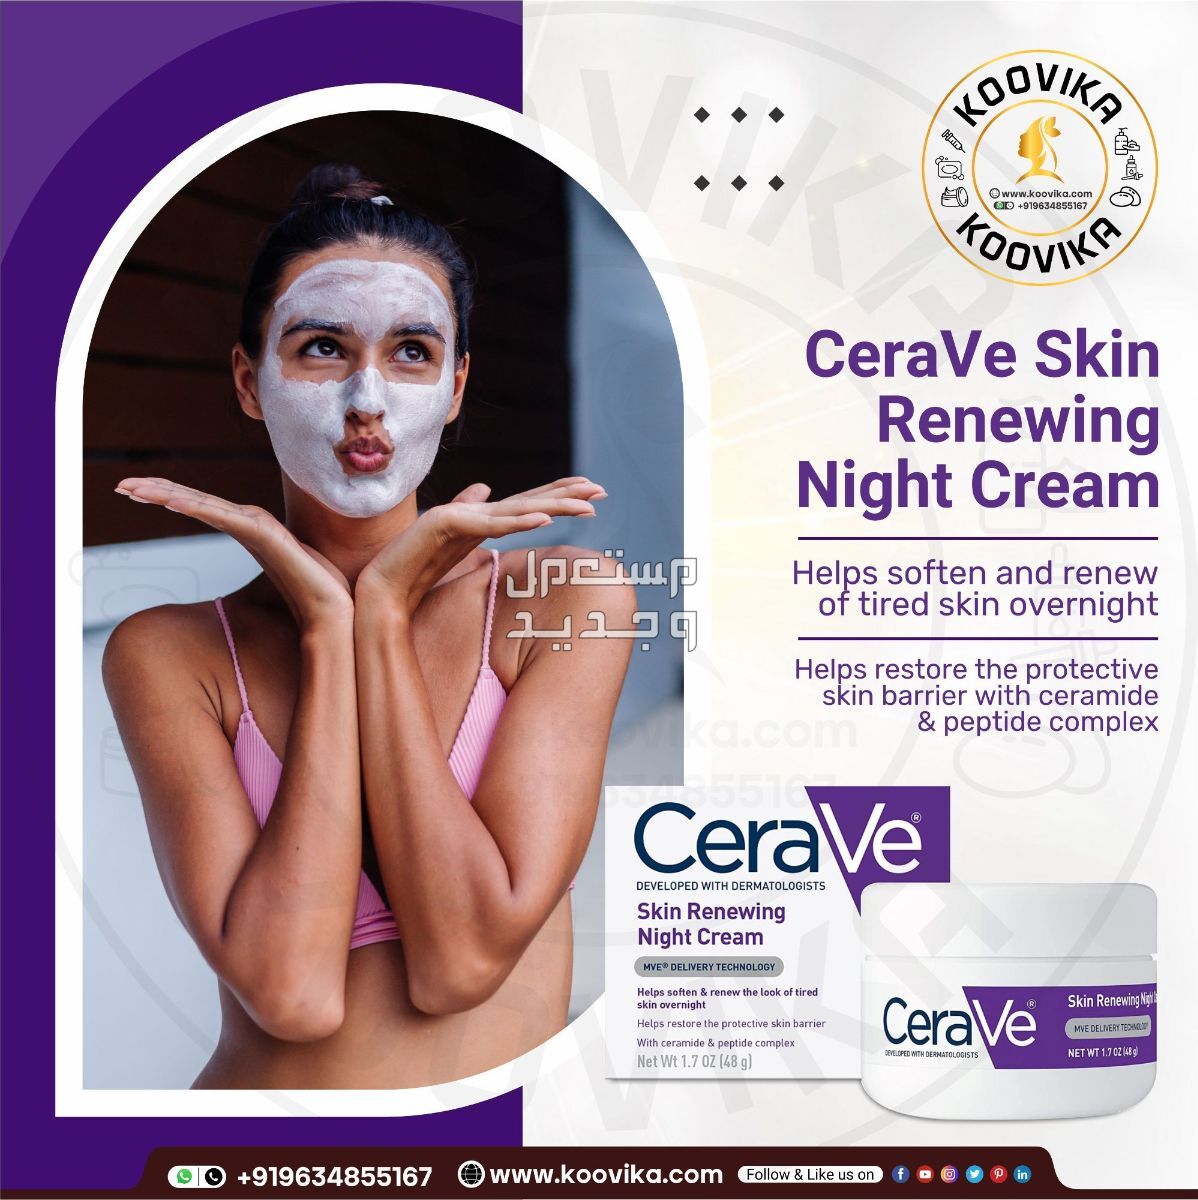 أفضل كريم ليلي للعناية بالبشرة لعام 2023 في ليبيا شكل كريم ليلي من CeraVe Skin Renewing Night Cream على البشرة